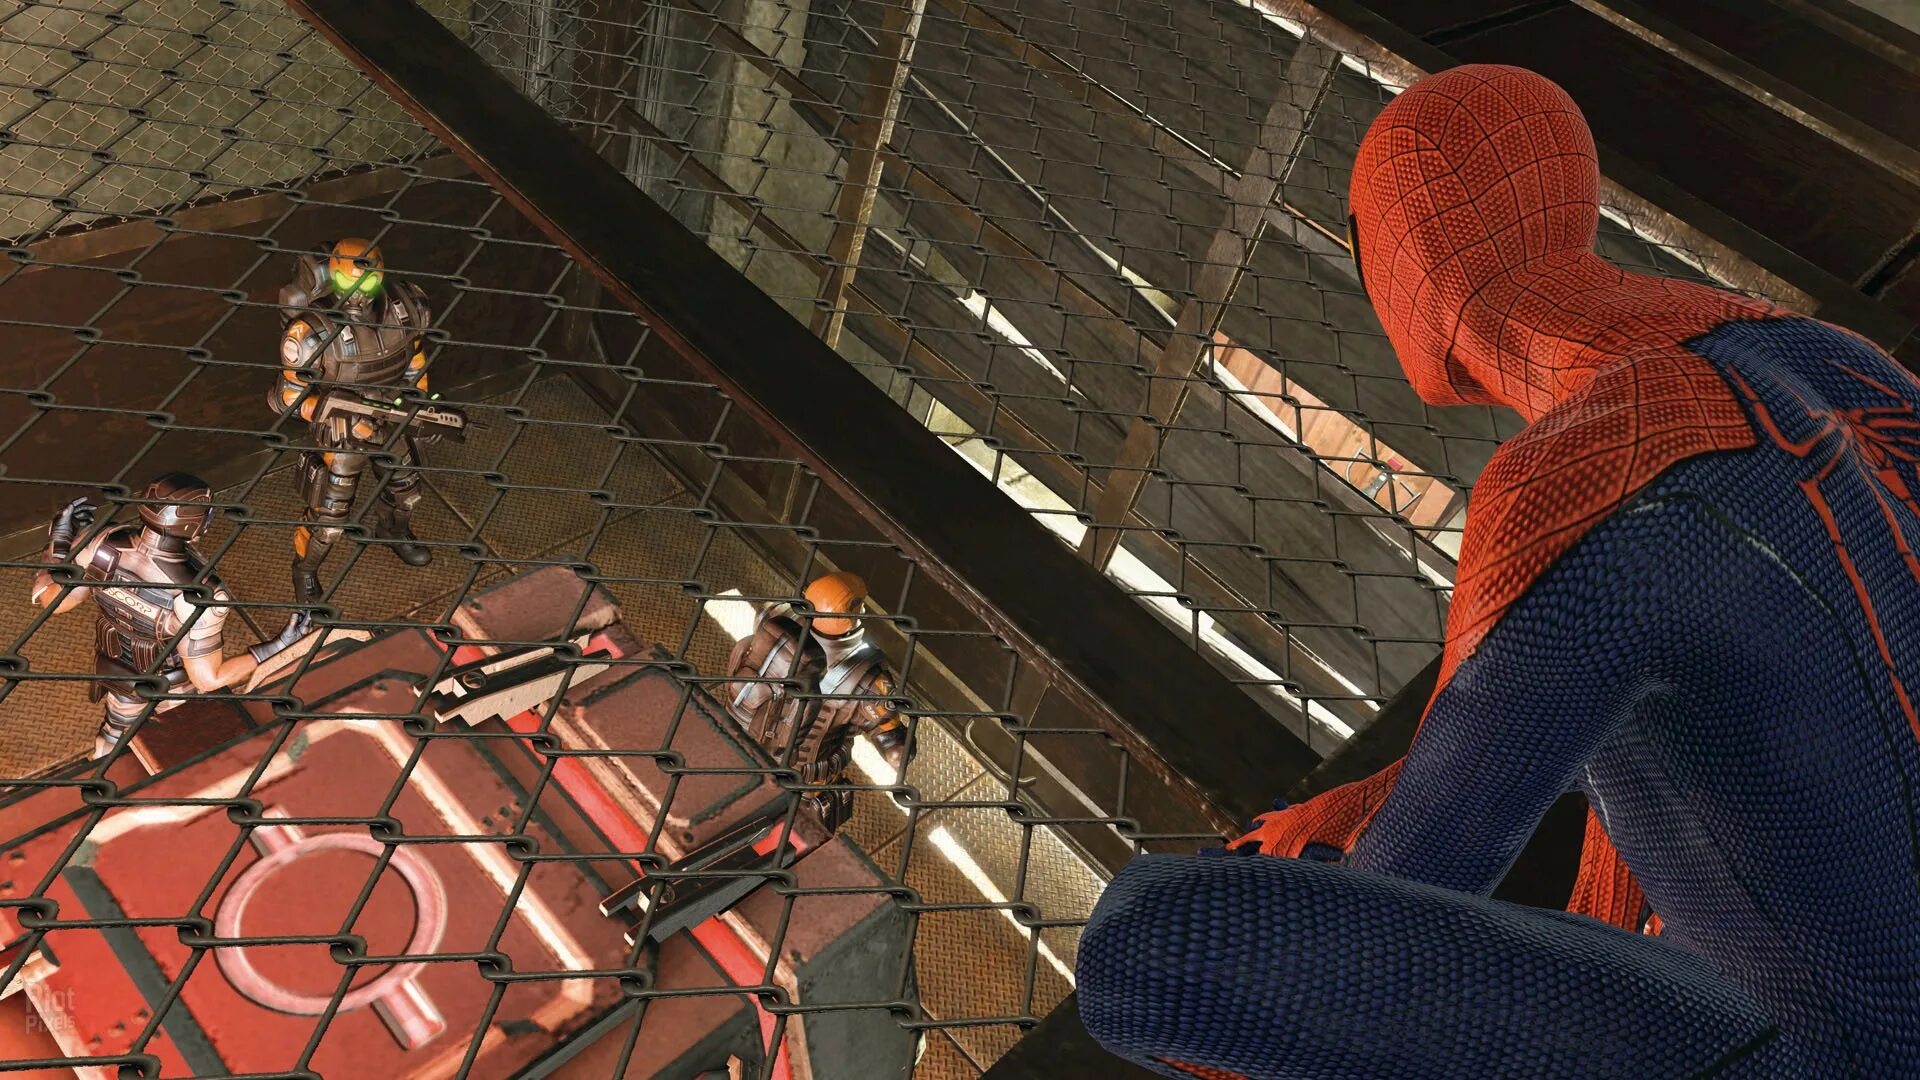 The amazing Spider-man (игра, 2012). The amazing Spider-man 2 (игра, 2014). Человек паук игра 2012. Spider-man 3 (игра).